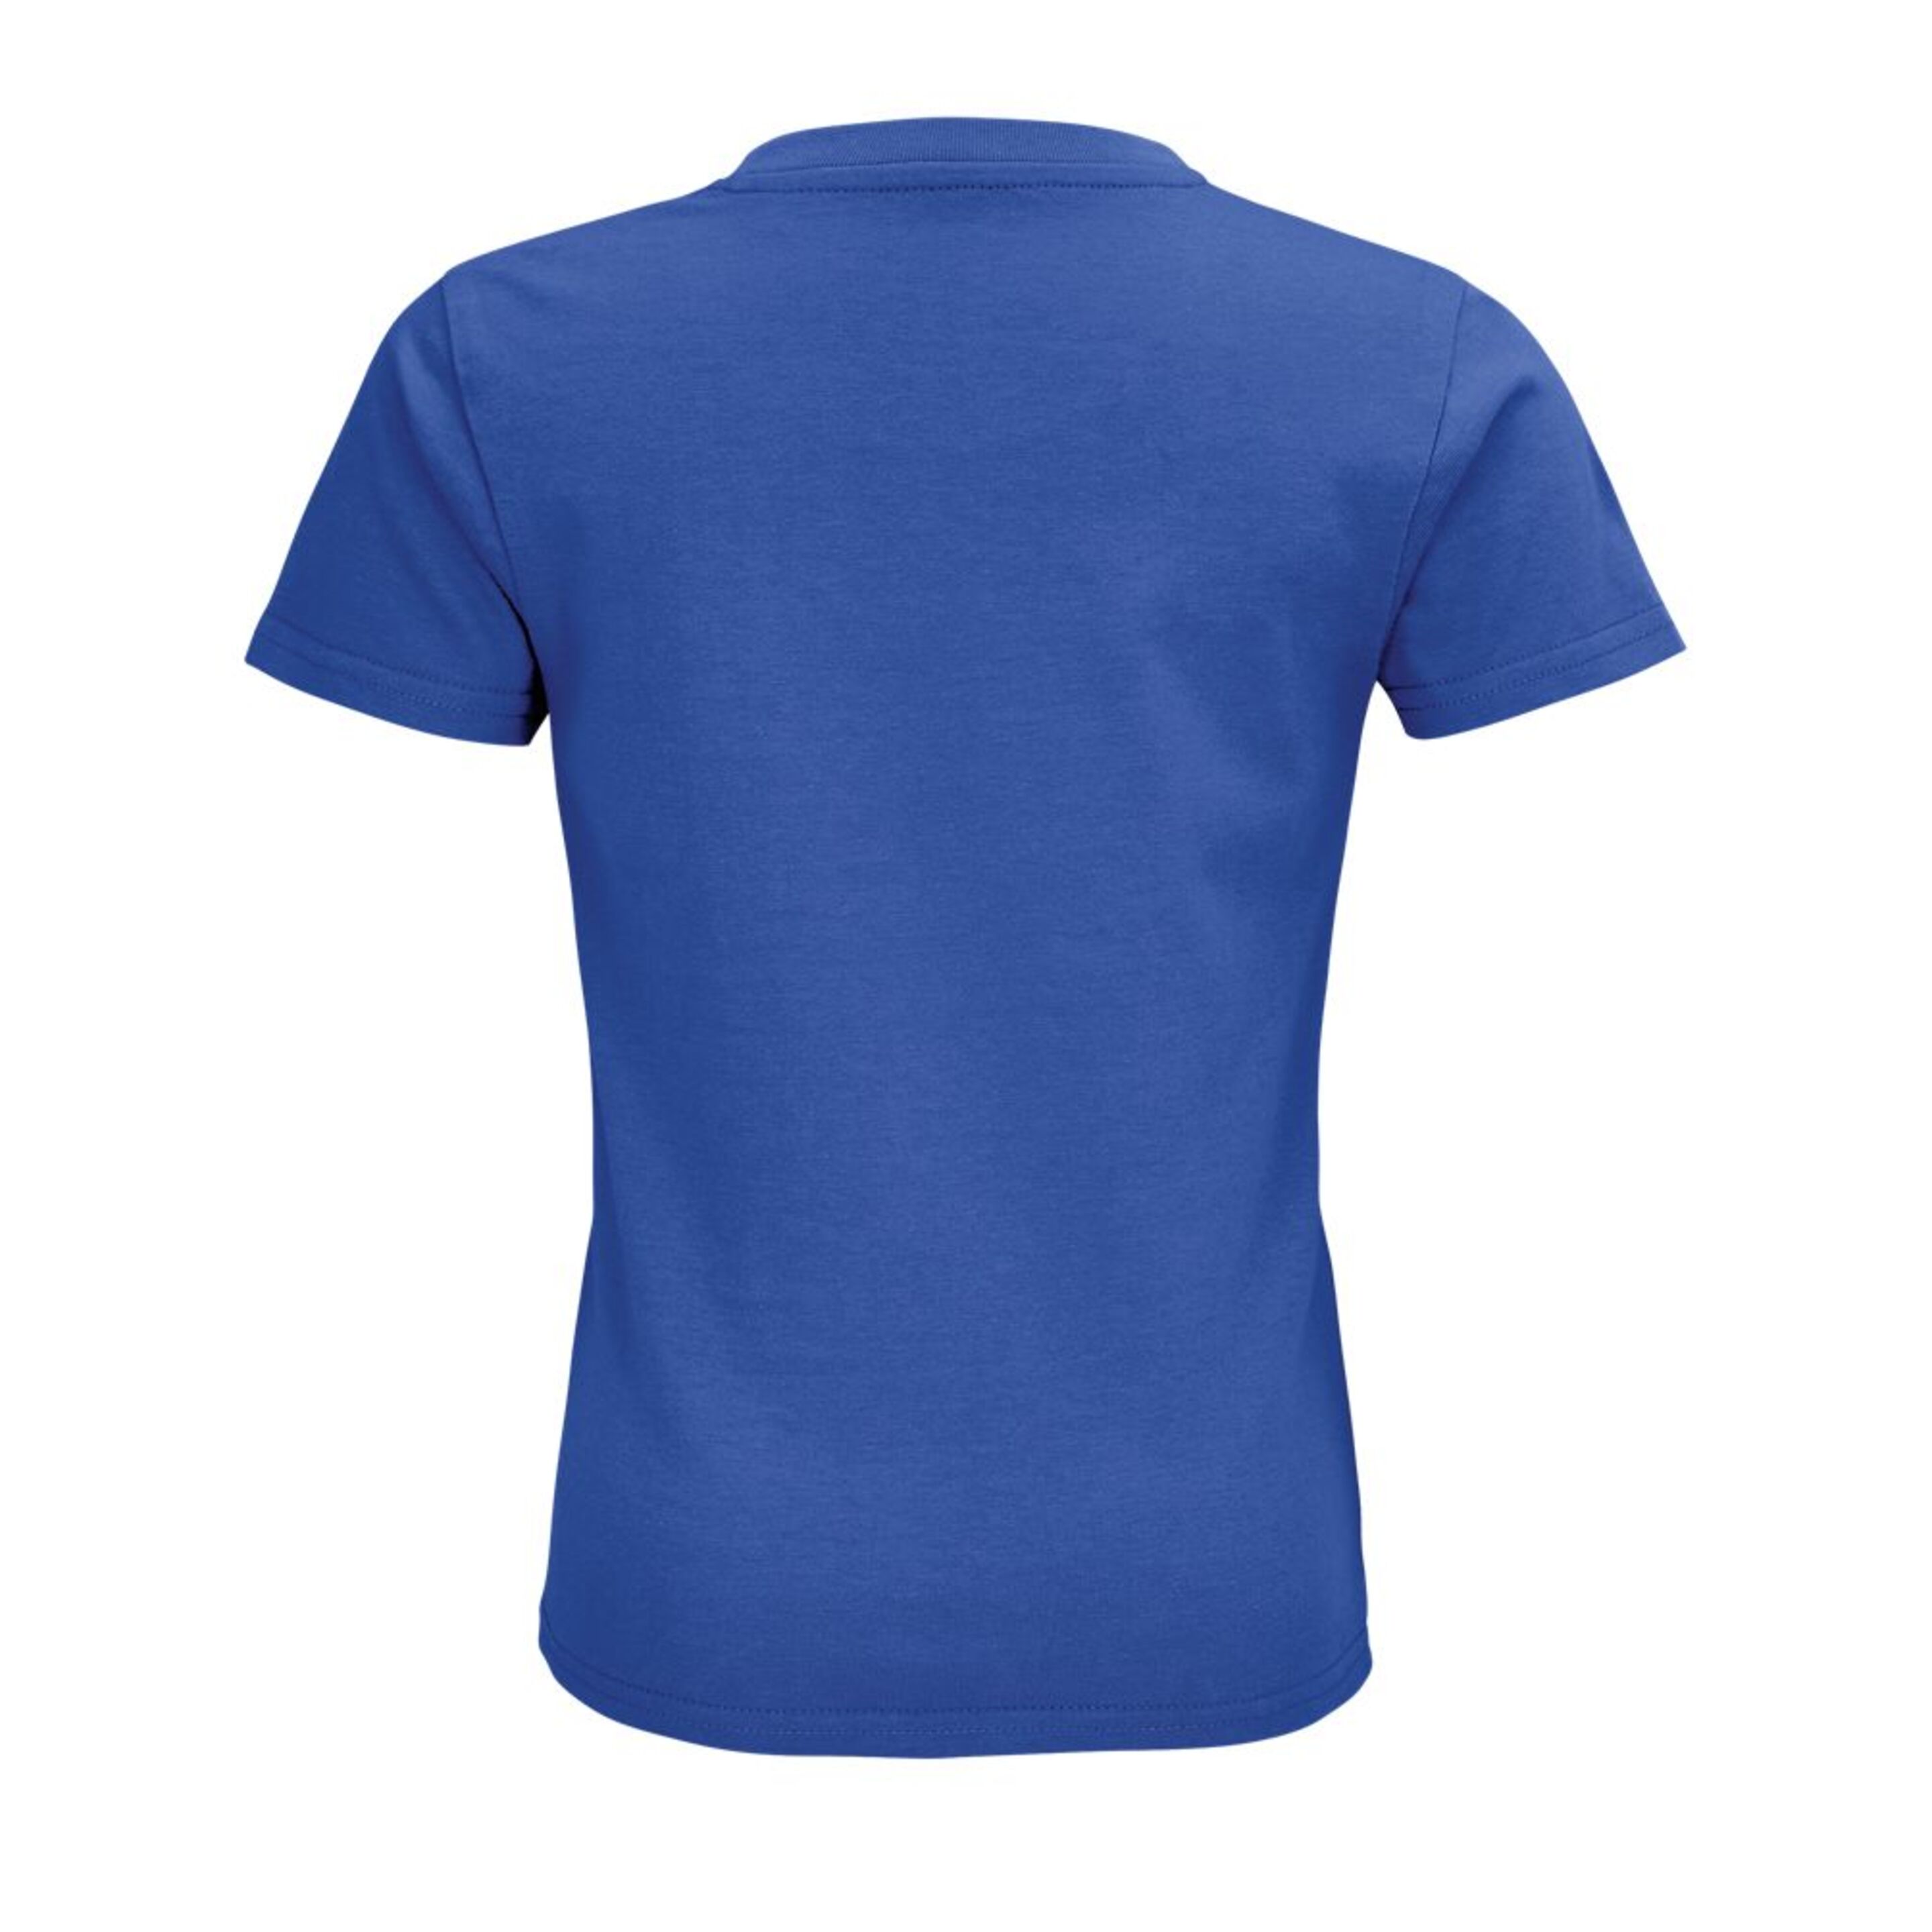 Camiseta Marnaula Pionner - Azul - Modelo Infantil  MKP